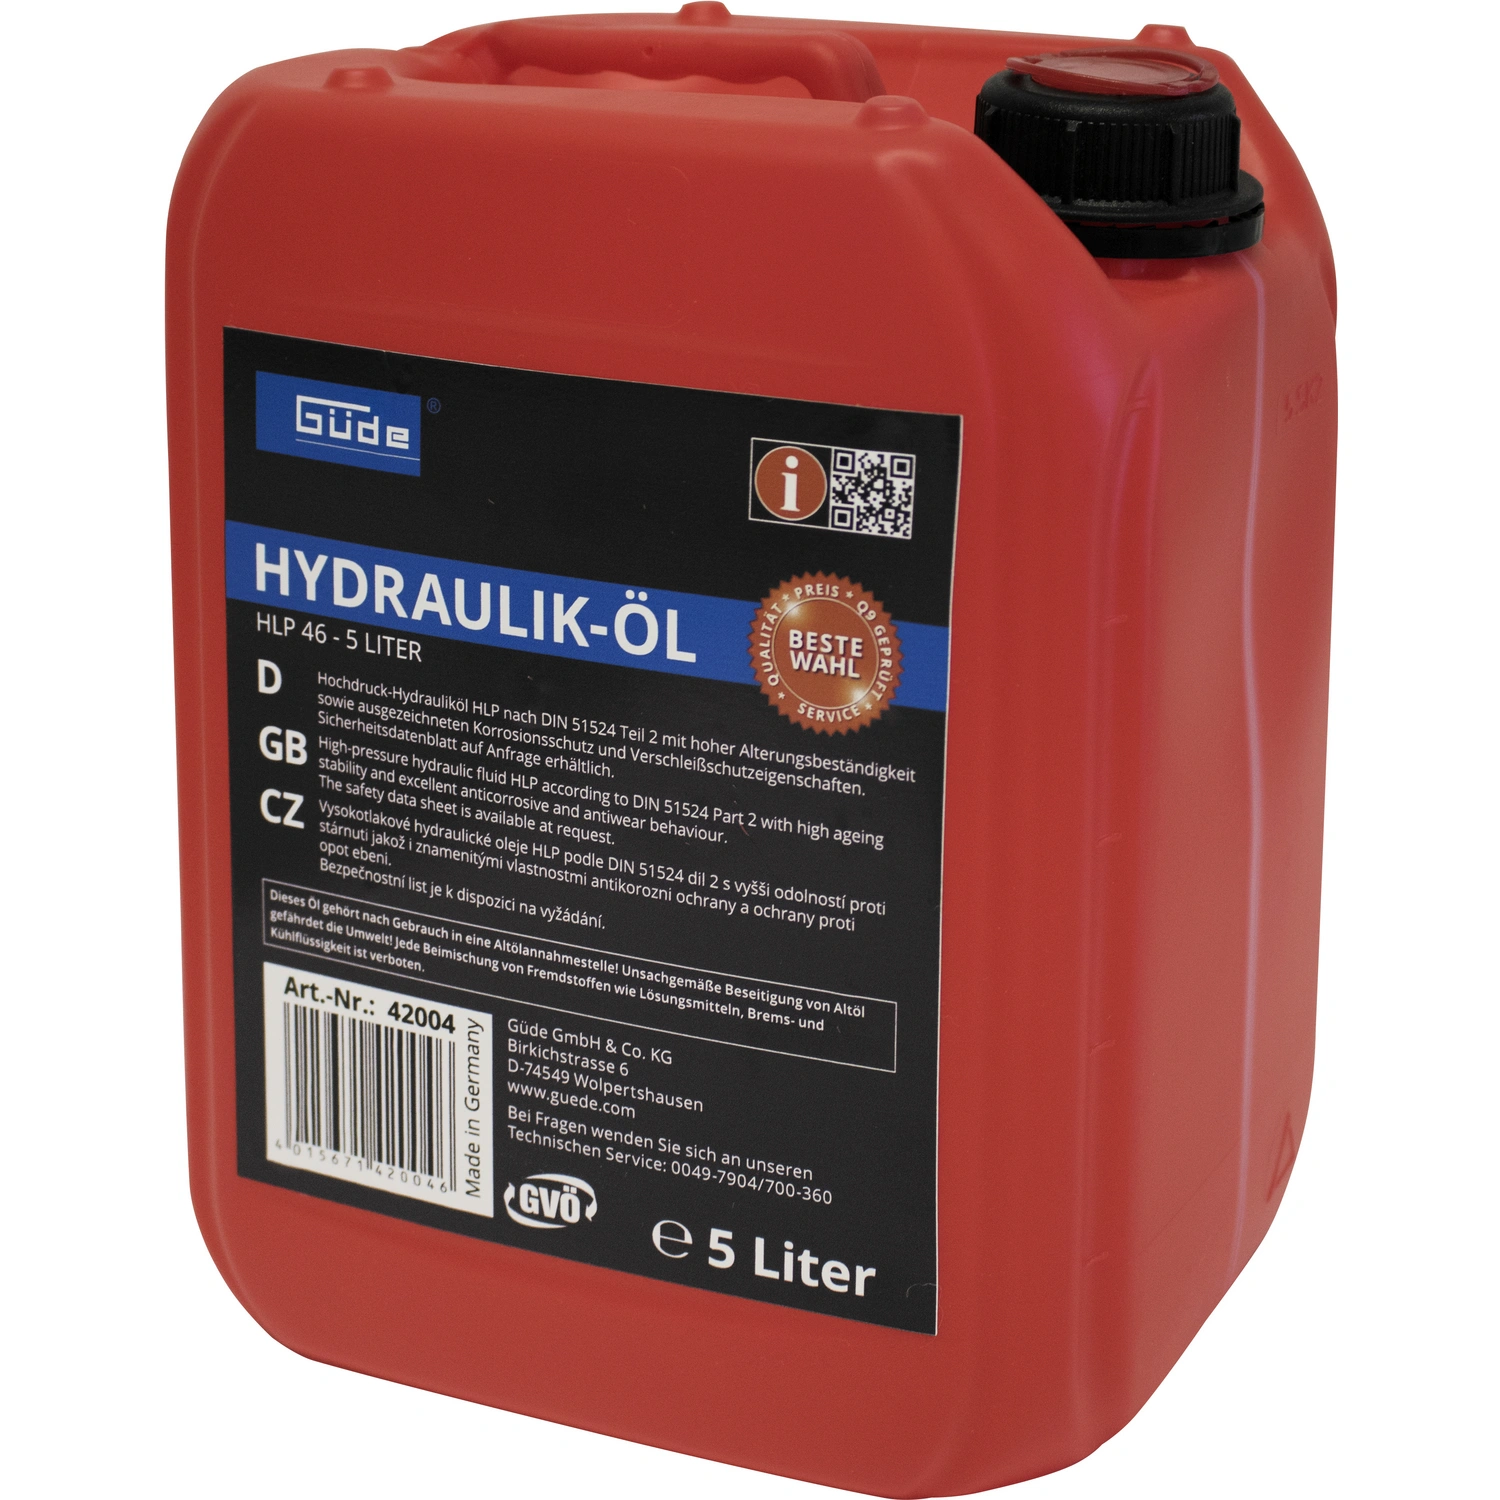 JCB Hydrauliköl HP46 5 Liter - REICHERT Ersatzteile